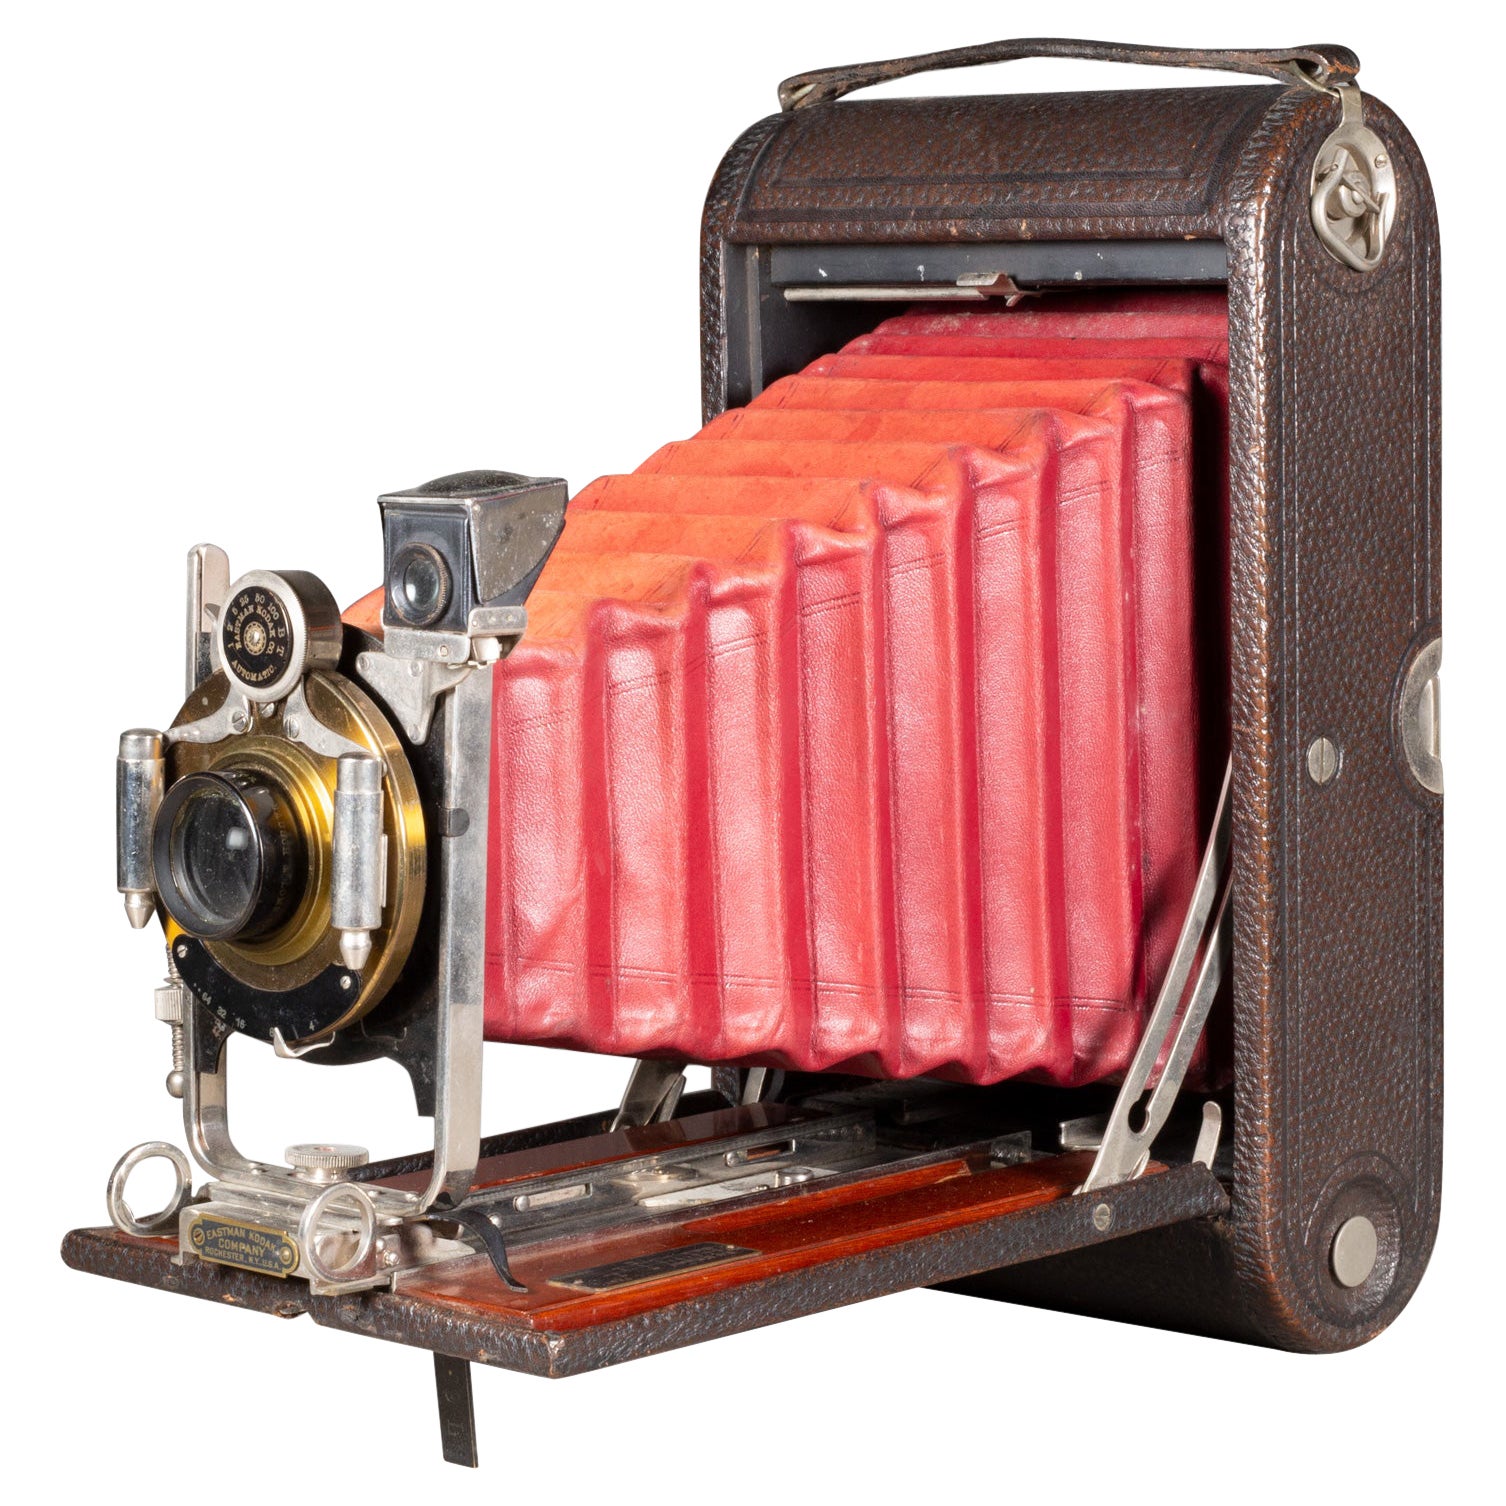 Grande appareil photo Kodak n° 3A pliable avec incrustation d'acajou, vers 1910 (expédition gratuite) en vente